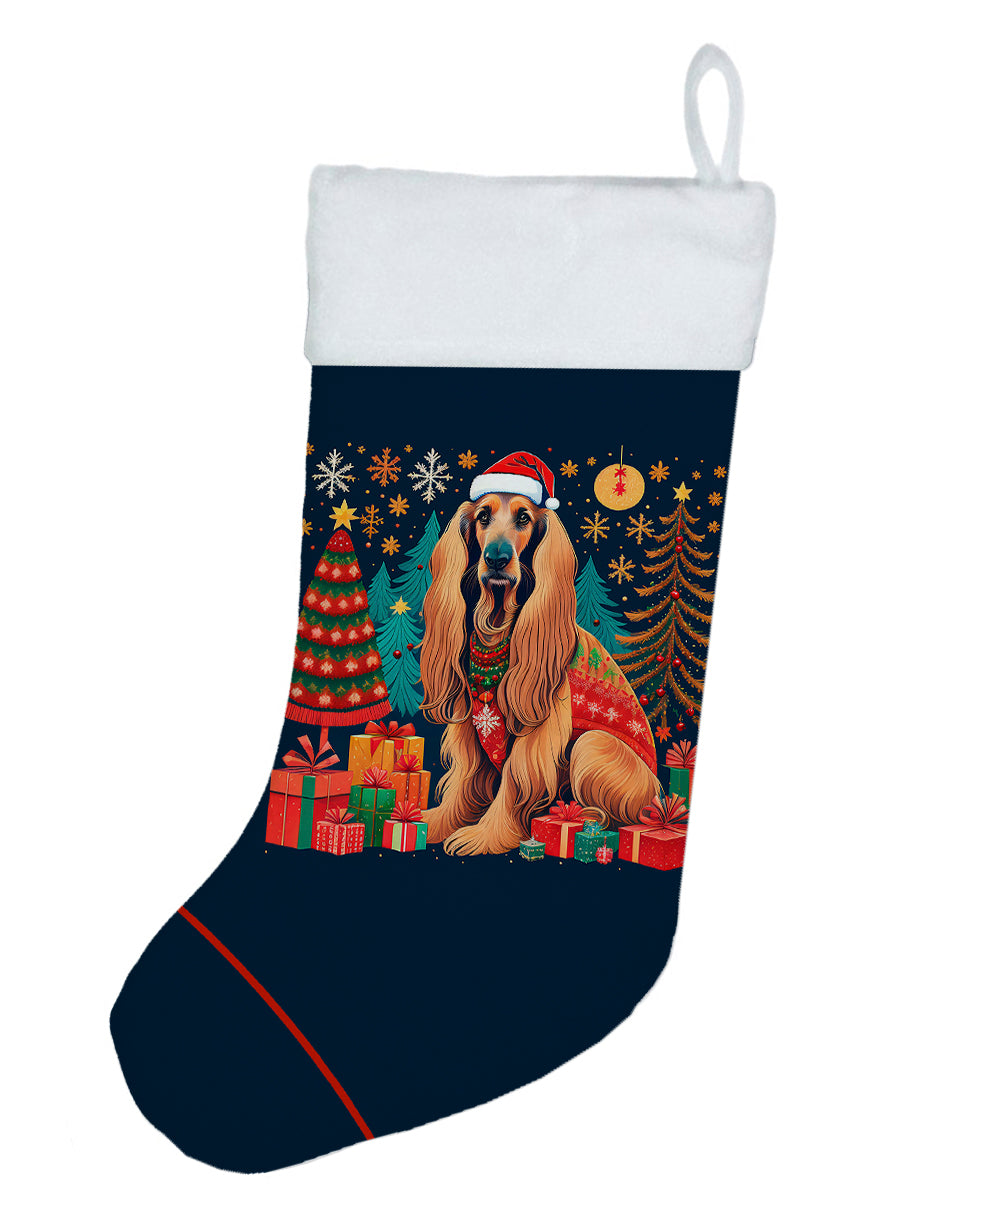 Buy this Afghan Hound Christmas Christmas Stocking